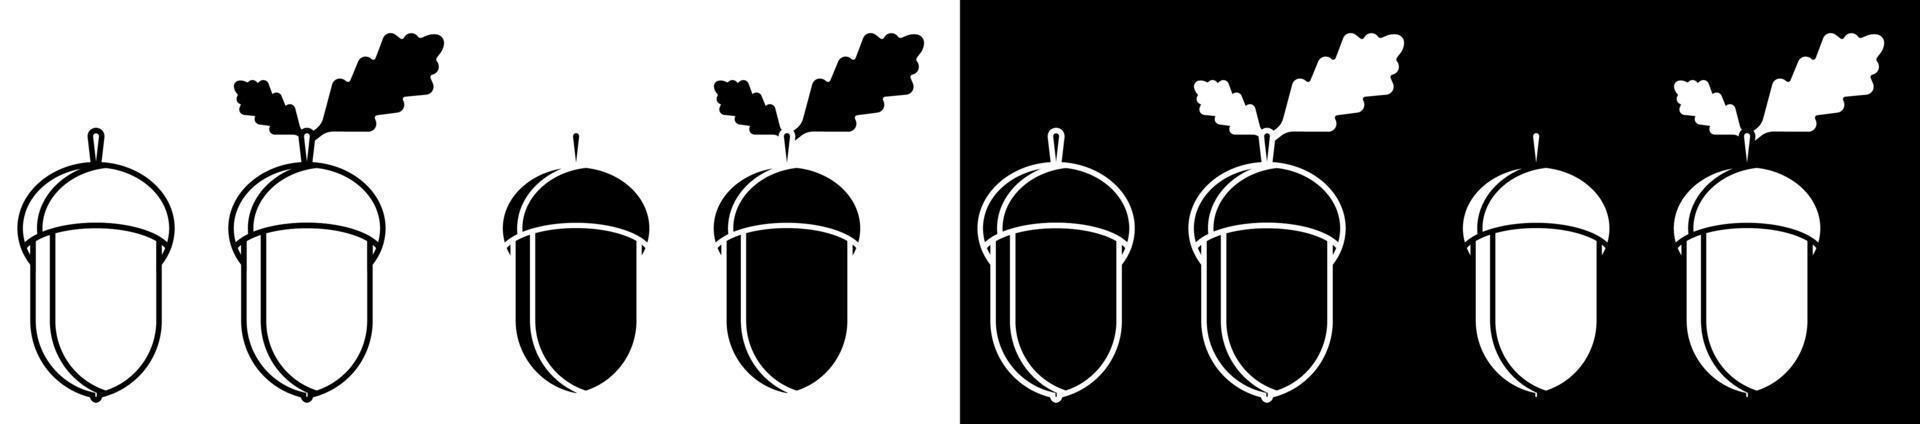 conjunto de iconos de bellota. roble, robledal. vector blanco y negro en estilo minimalista